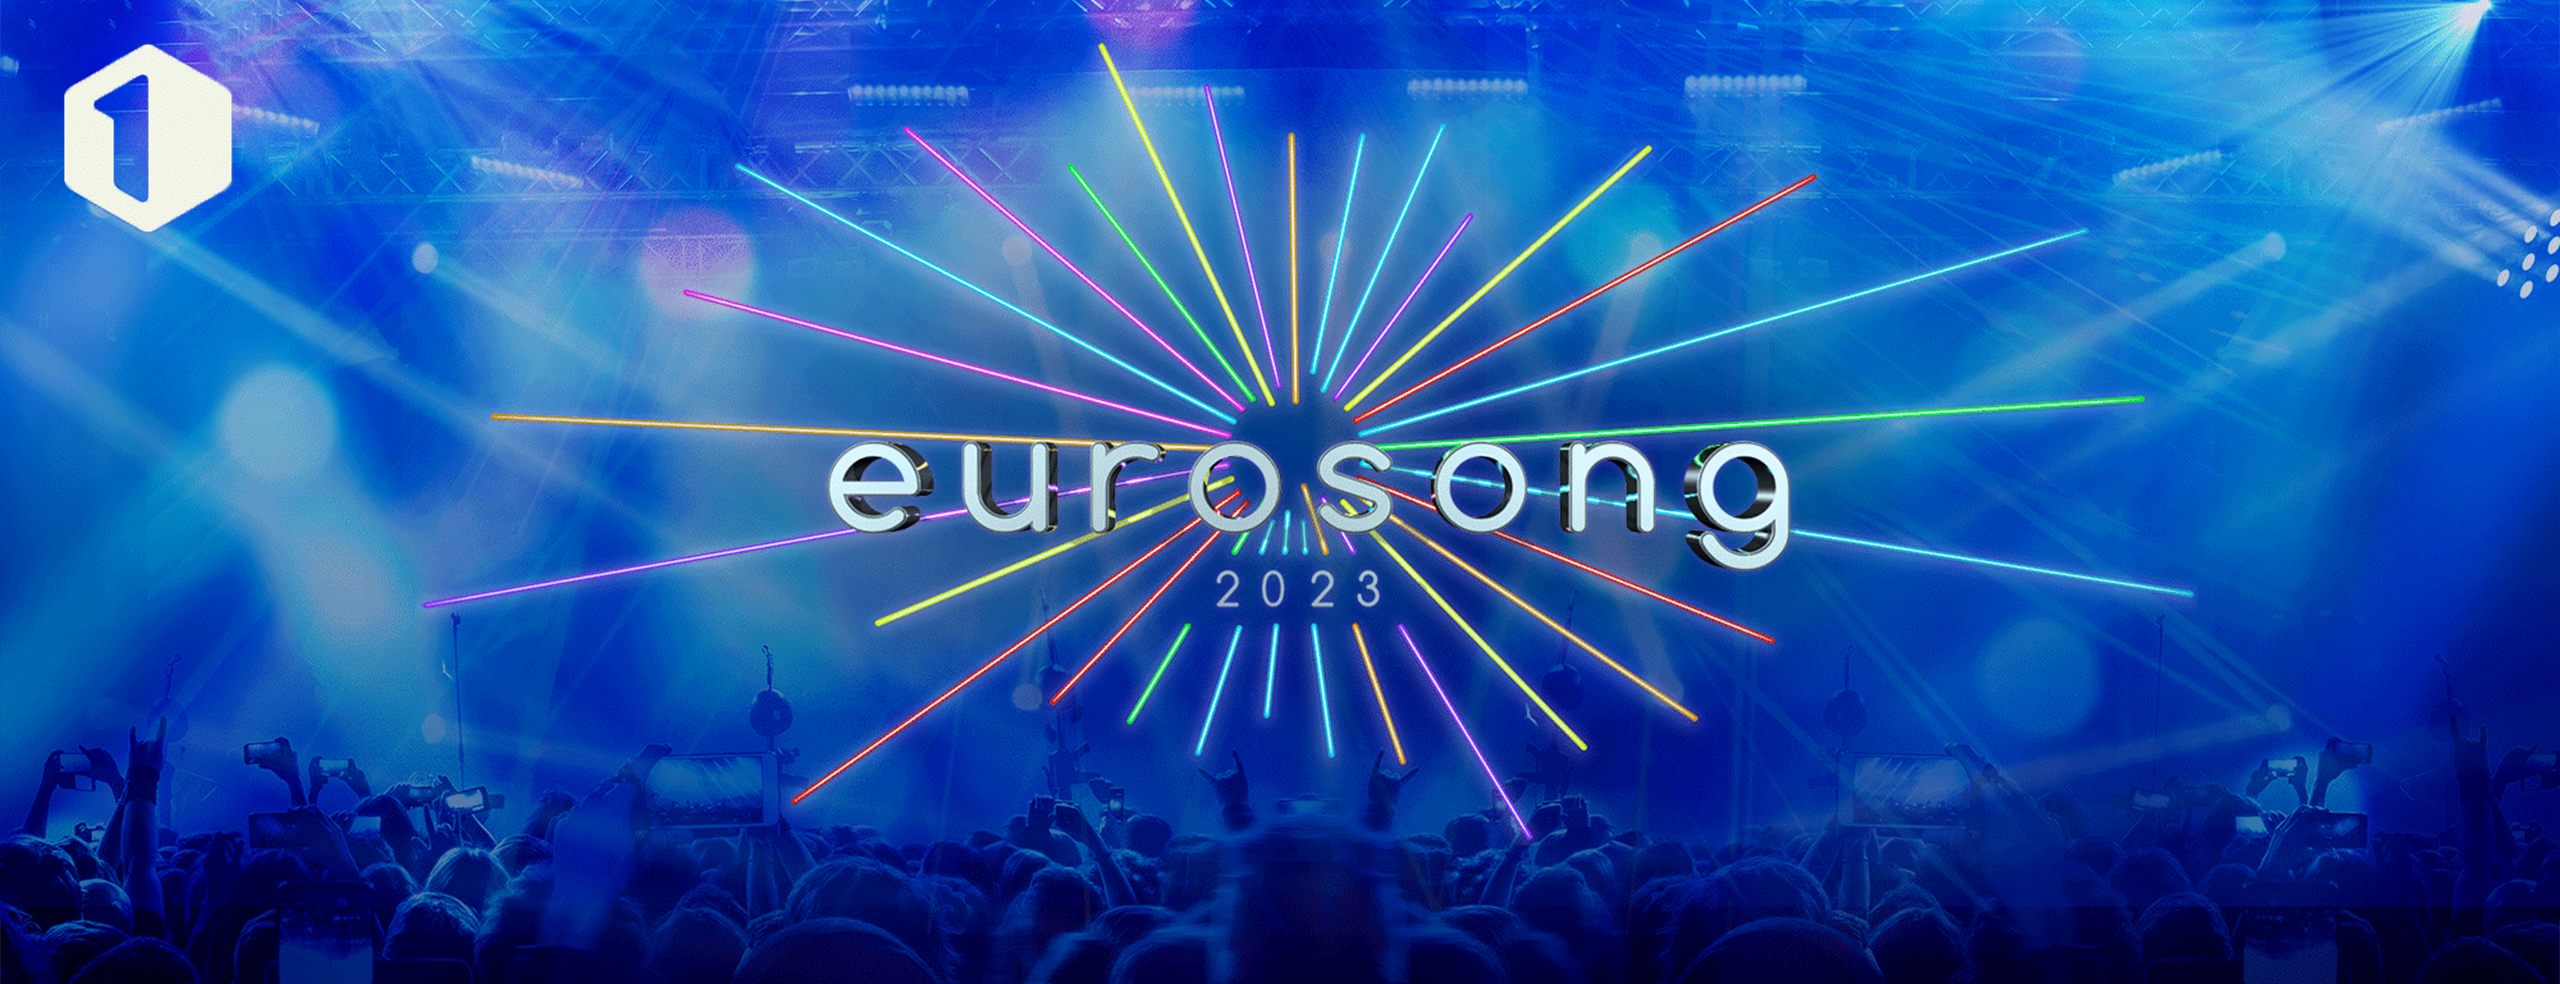 Eurosong 2023